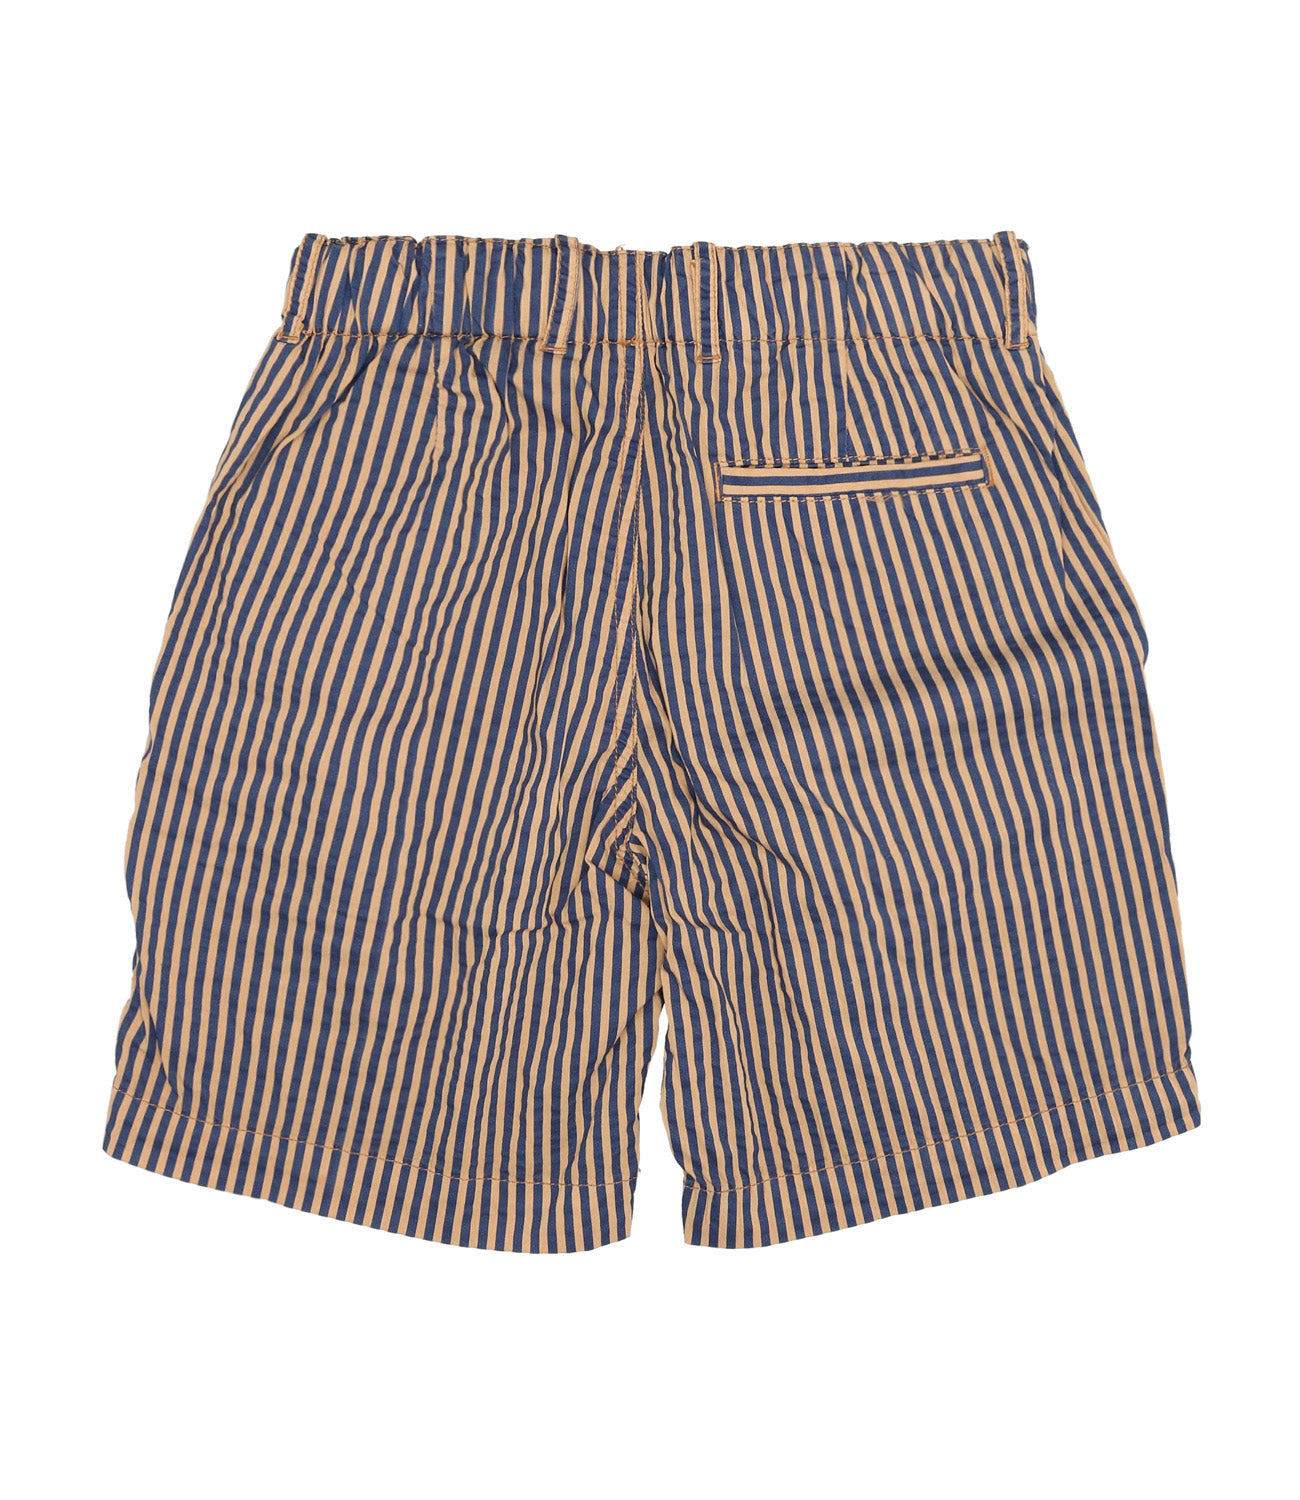 Bermuda Shorts Crusca+Blu